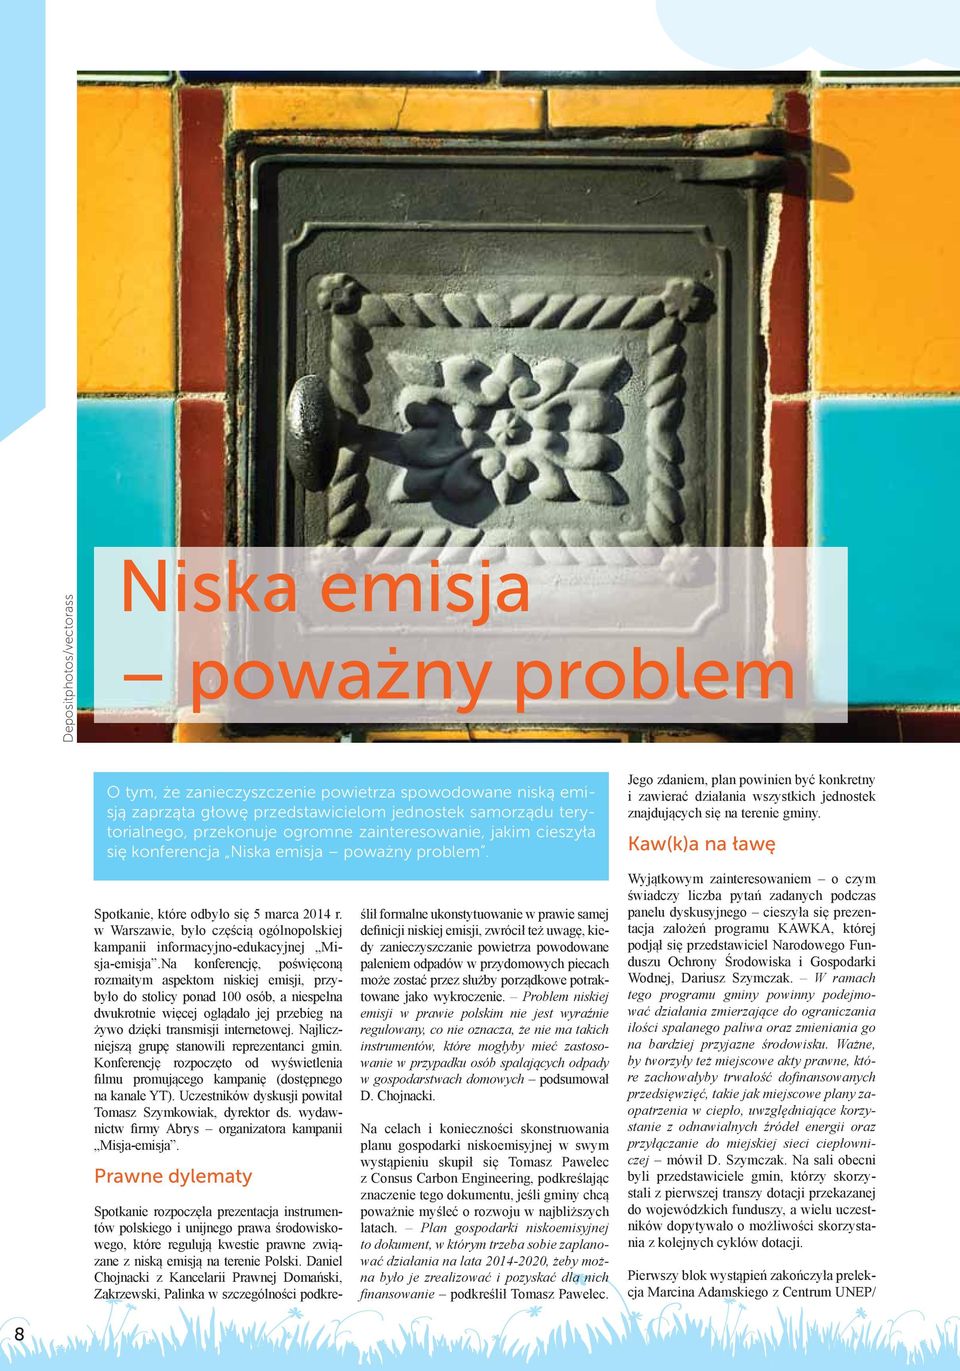 w Warszawie, było częścią ogólnopolskiej kampanii informacyjno-edukacyjnej Misja-emisja.